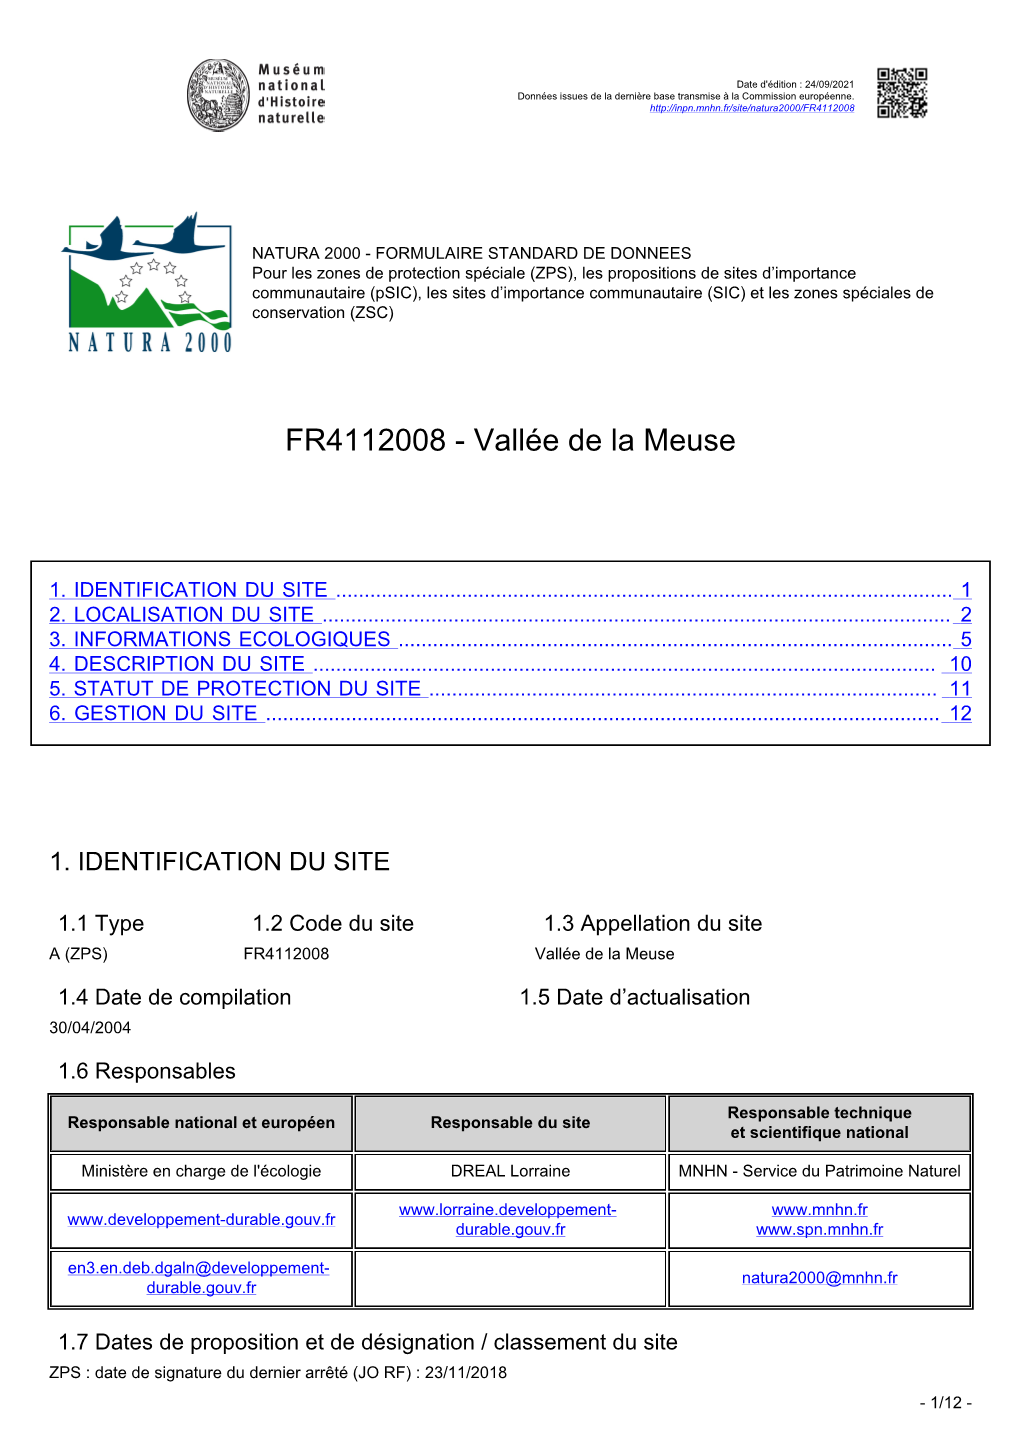 Téléchargez Le Formulaire Standard De Données Du Site Natura 2000 Au Format